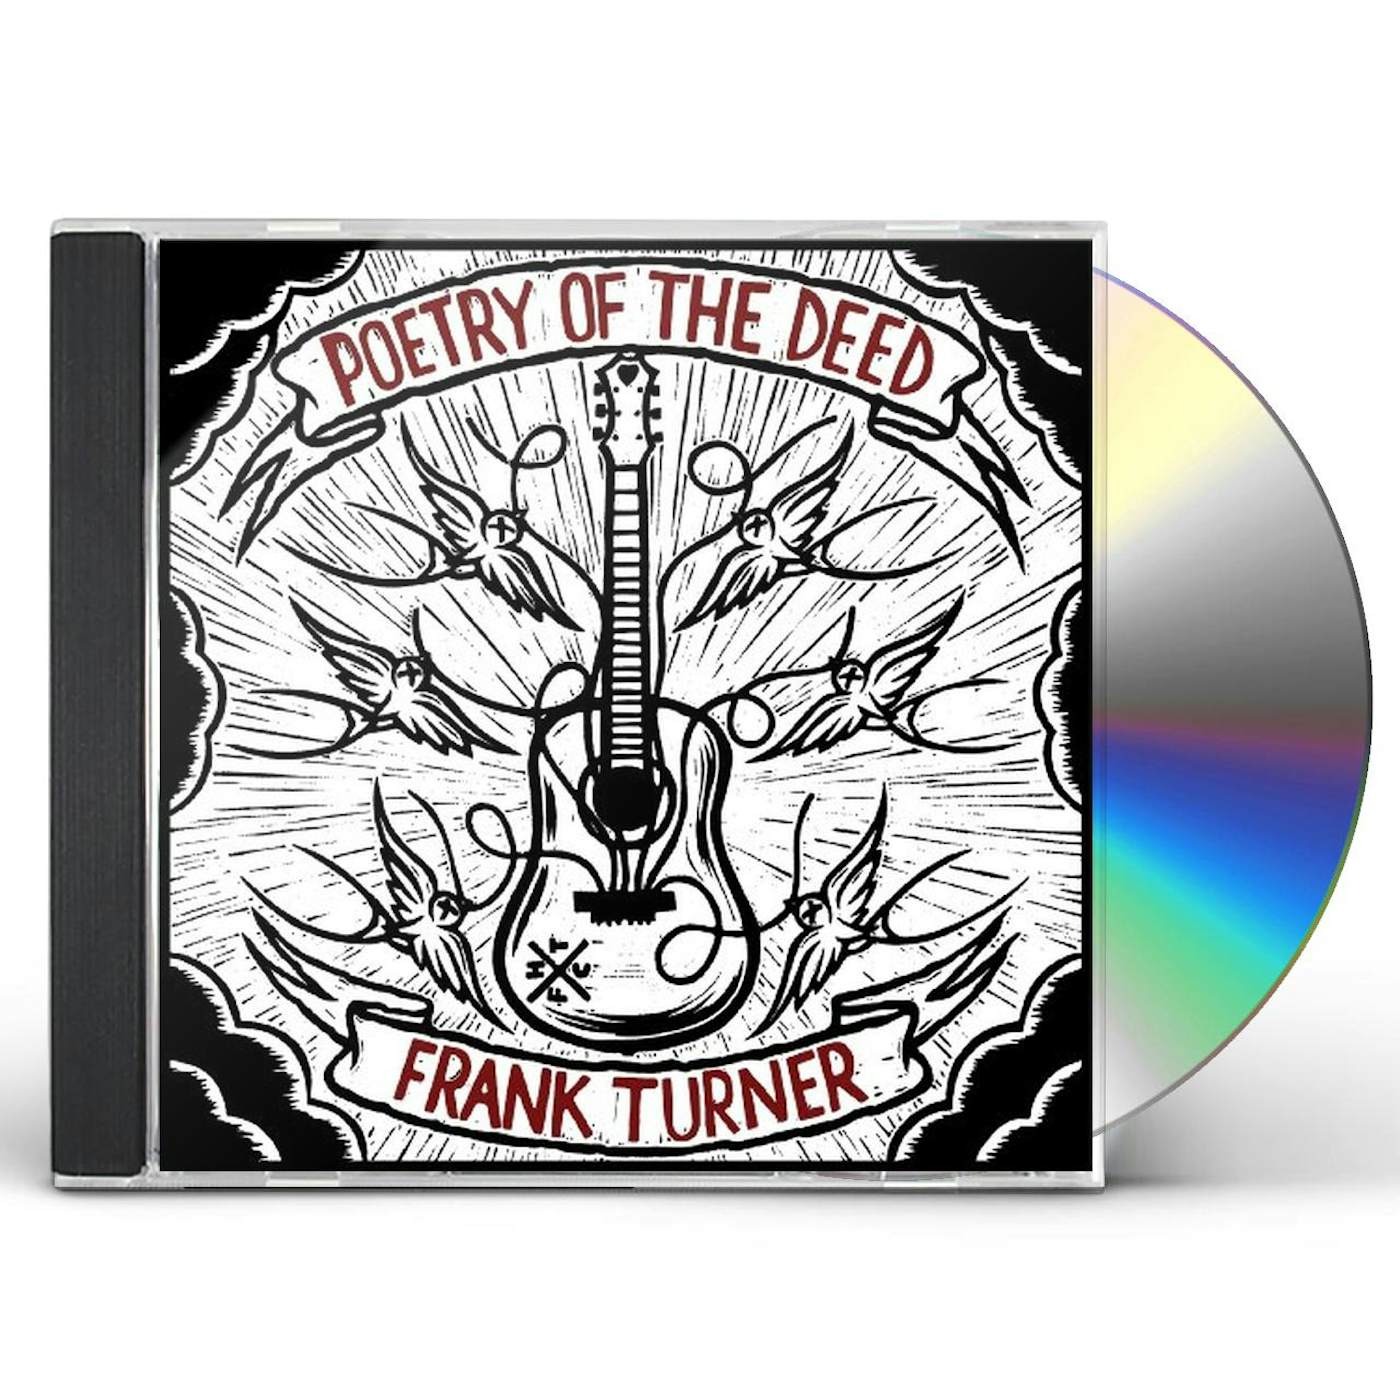 Frank Turner POETRY OF THE DEED CD